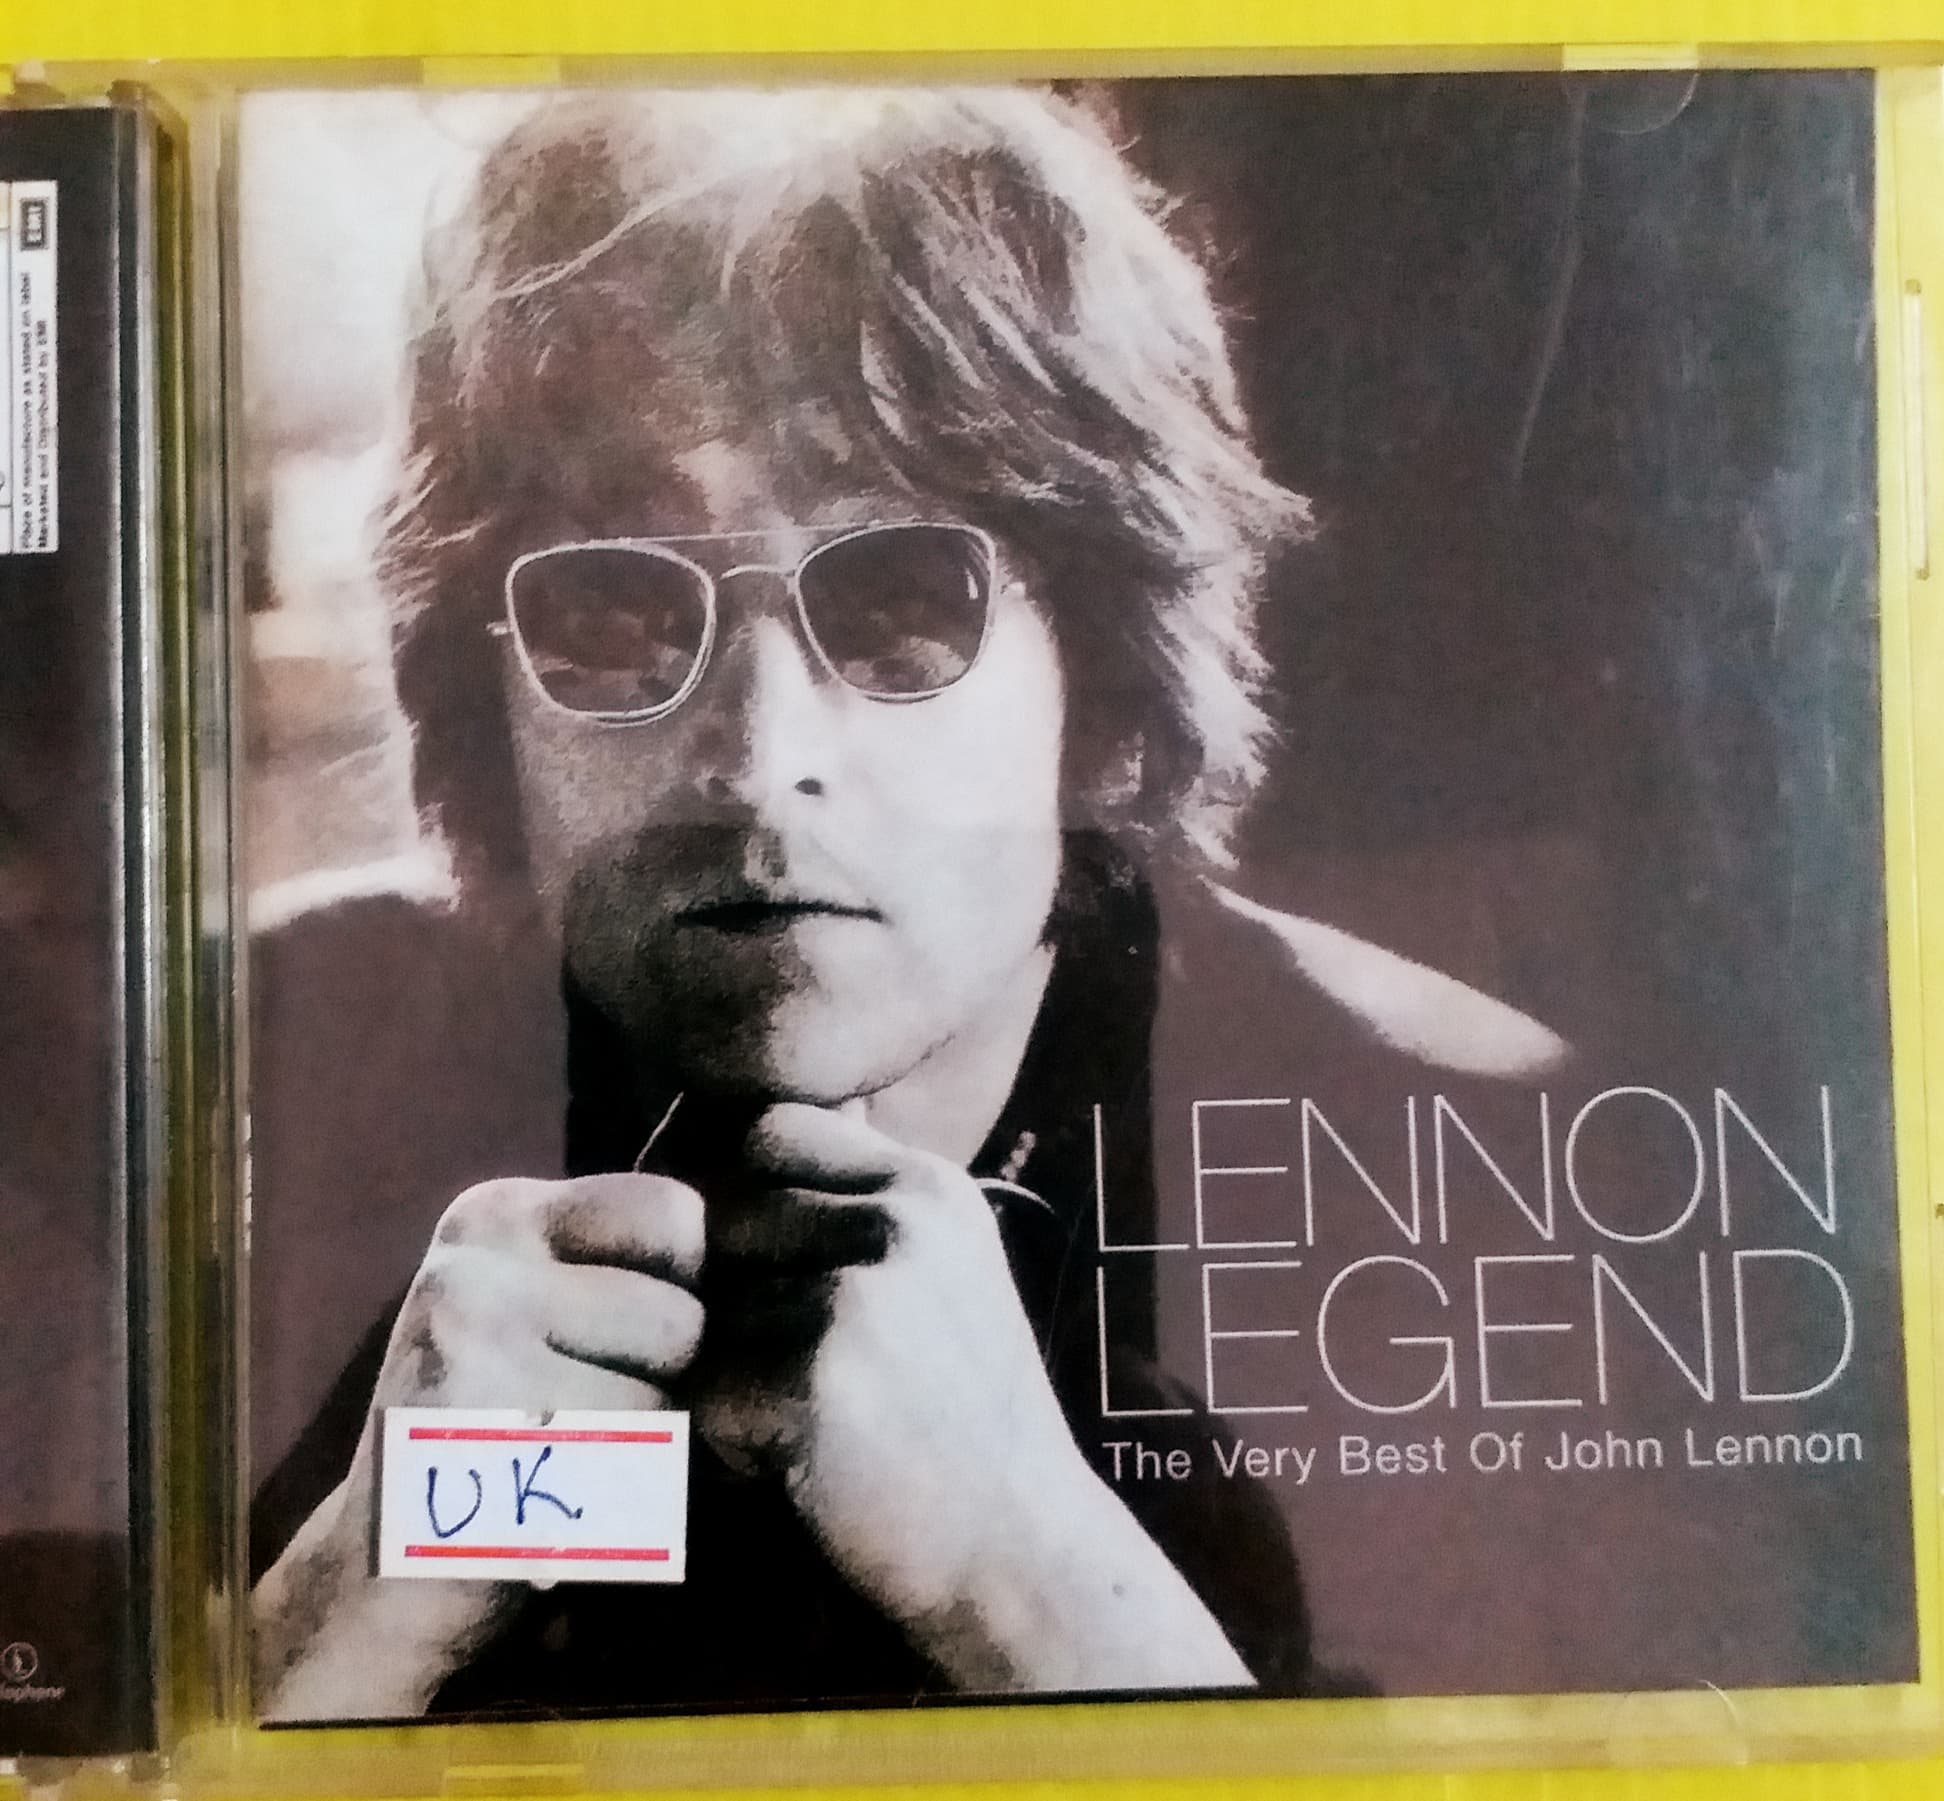 CD THE VERY BEST OF JOHN LENNON ชุด LENNON LEGEND MADE IN UK